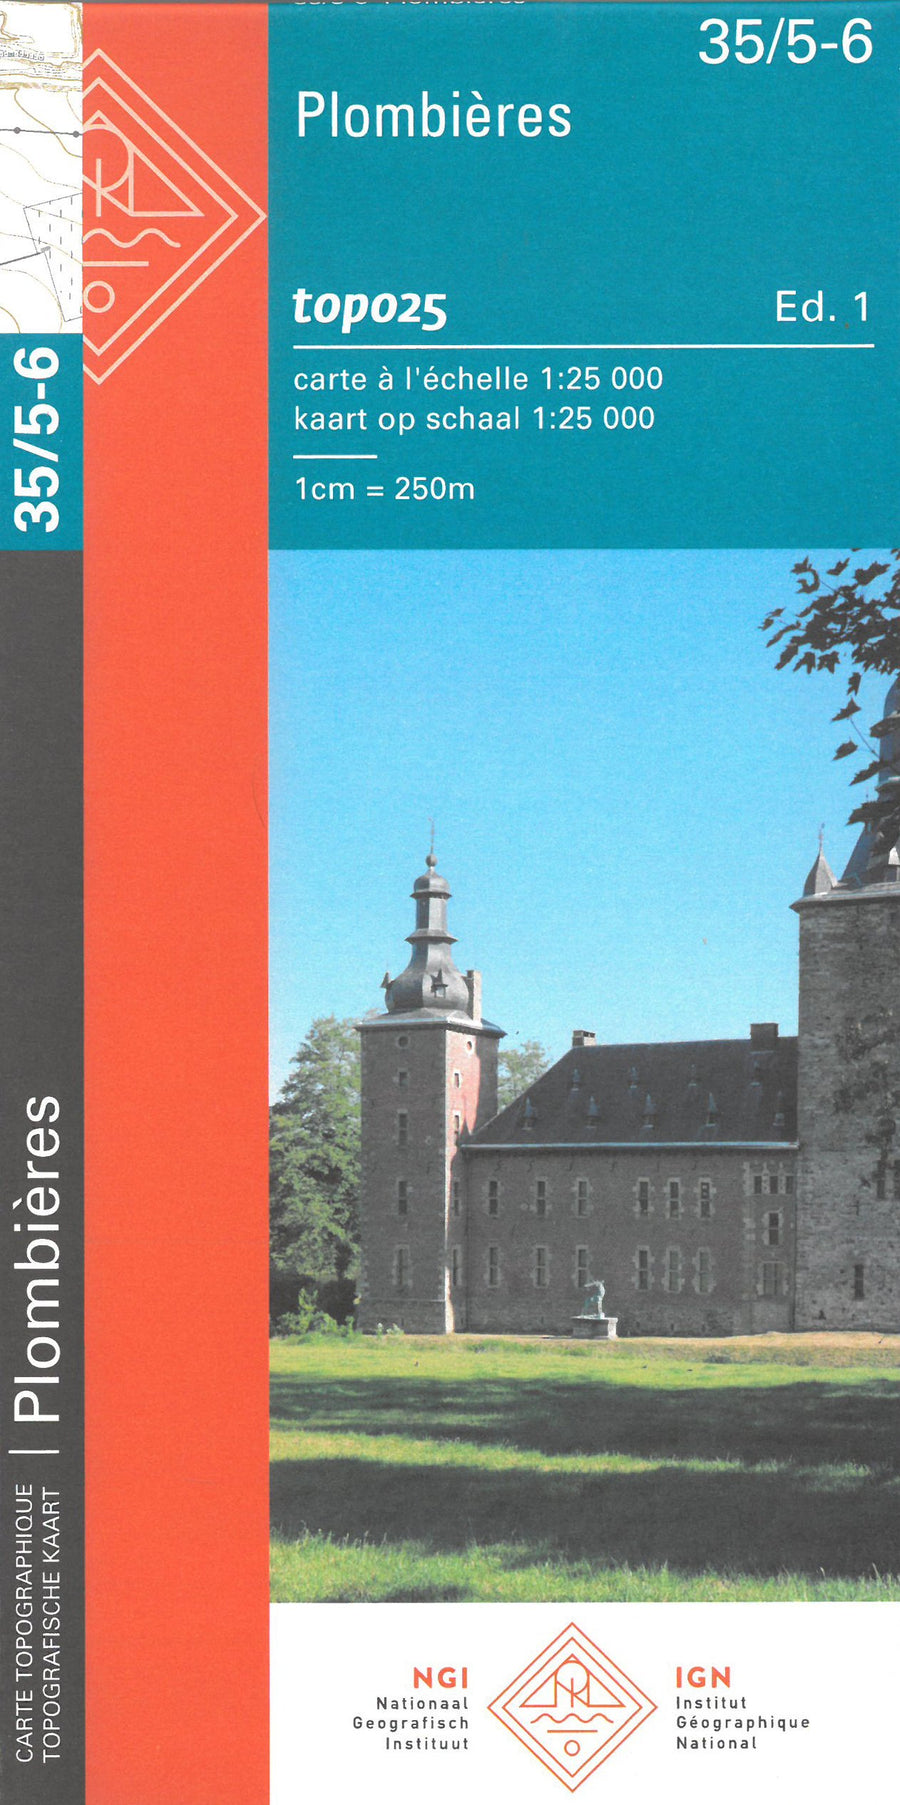 Carte topographique n° 35/5-6 - Plombières (Belgique) | NGI topo 25 carte pliée IGN Belgique 